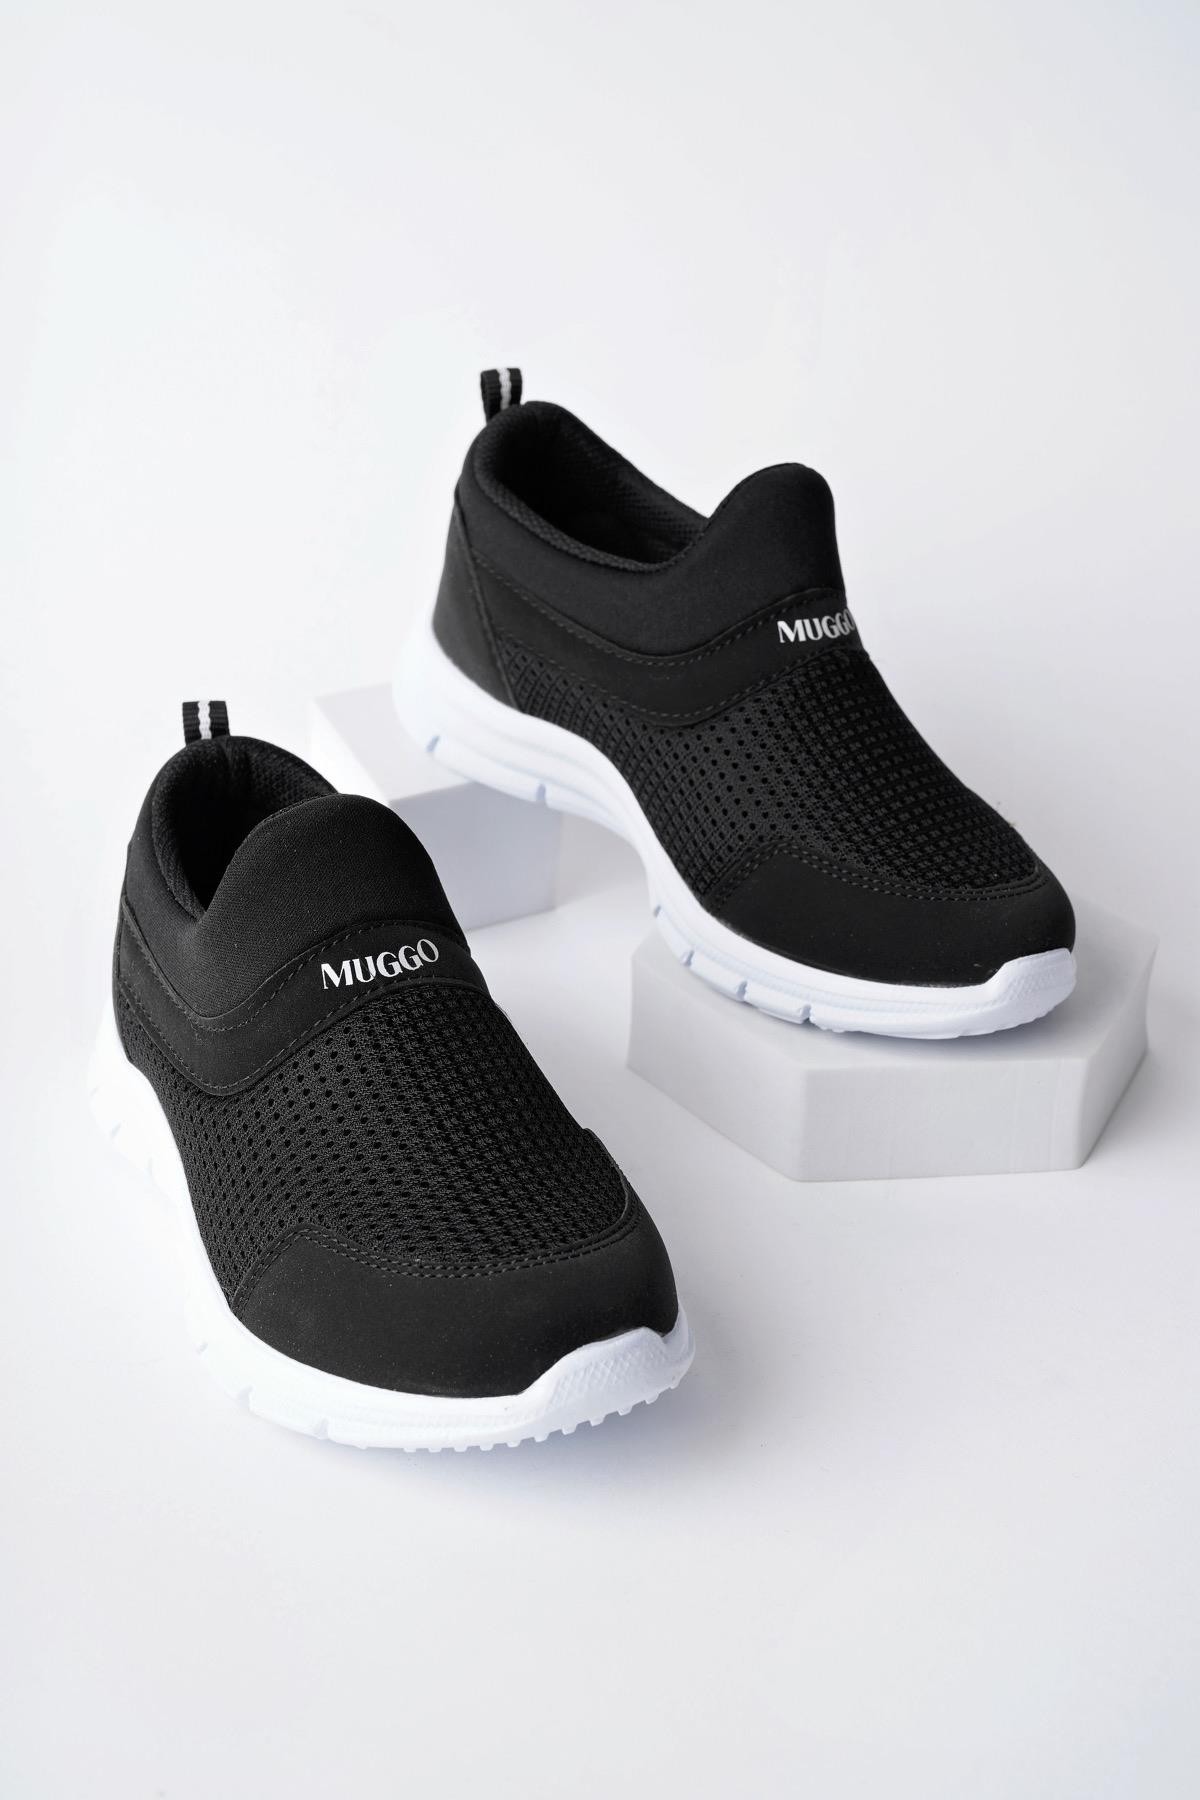 Muggo PİCO Garantili  Unisex Çocuk Bağcıksız Rahat Esnek Günlük Sneaker Spor Ayakkabı